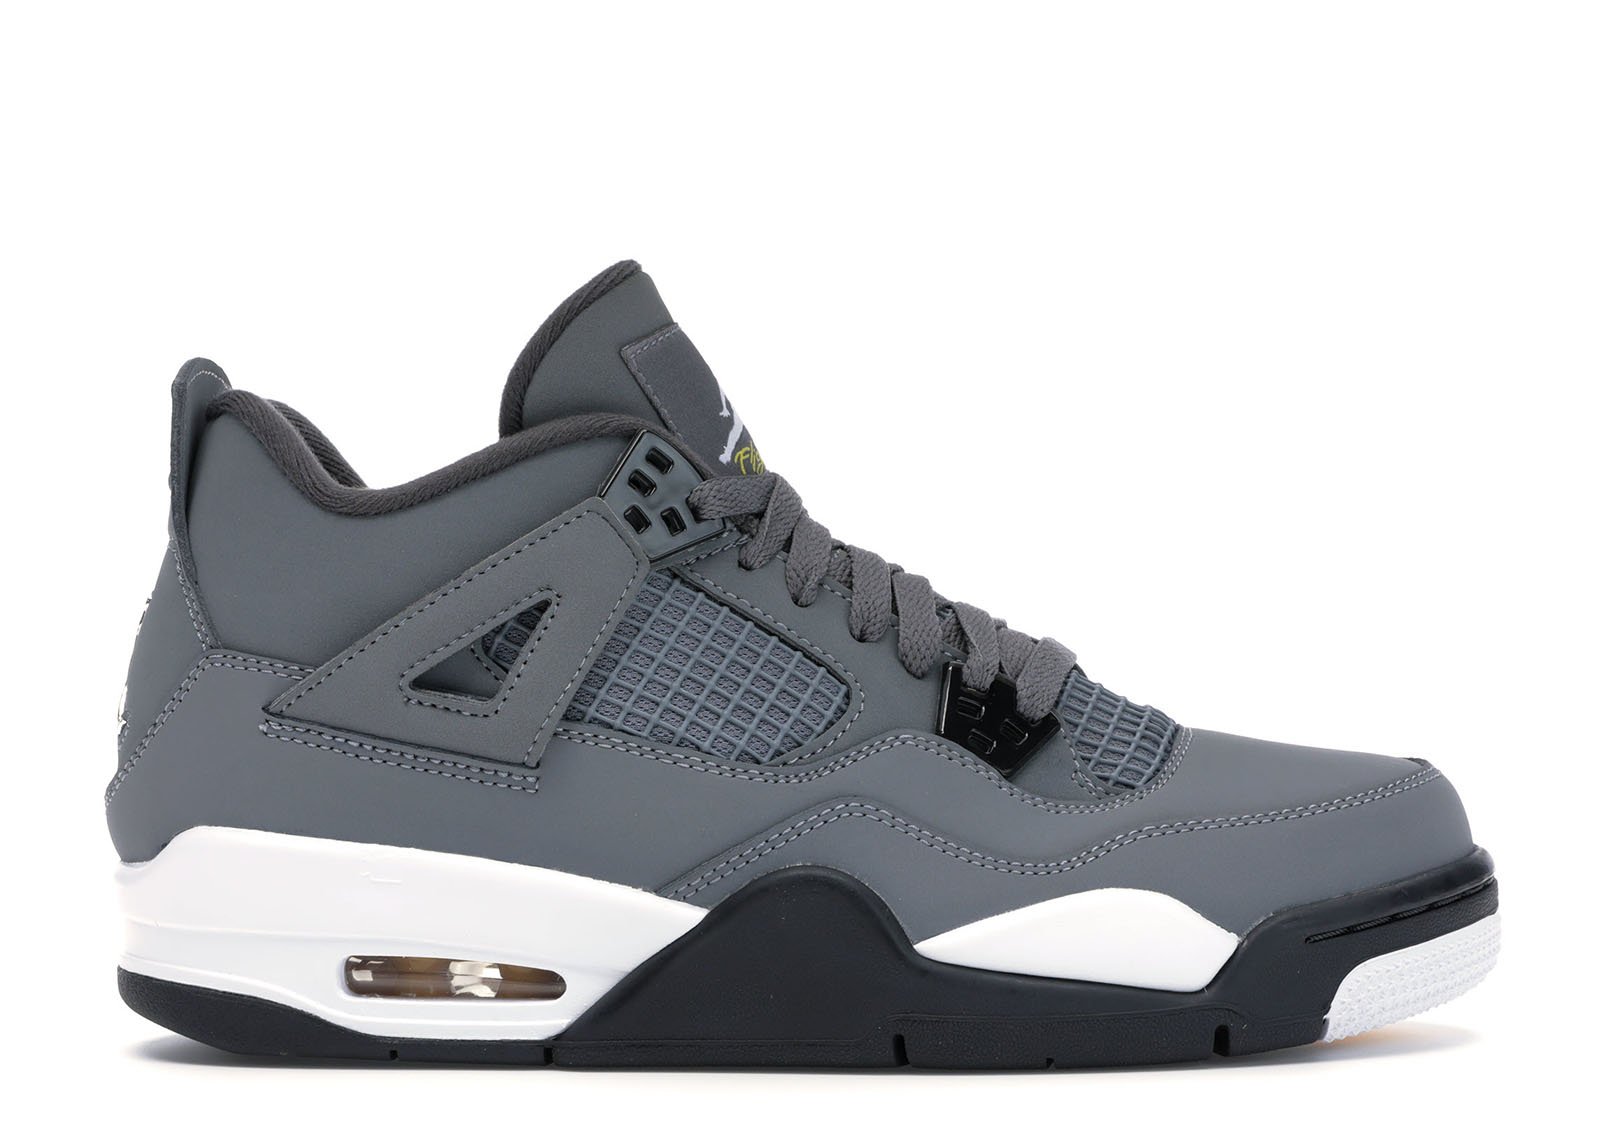 Jordan 4 Retro Cool Grey (2019) (GS) sneakers